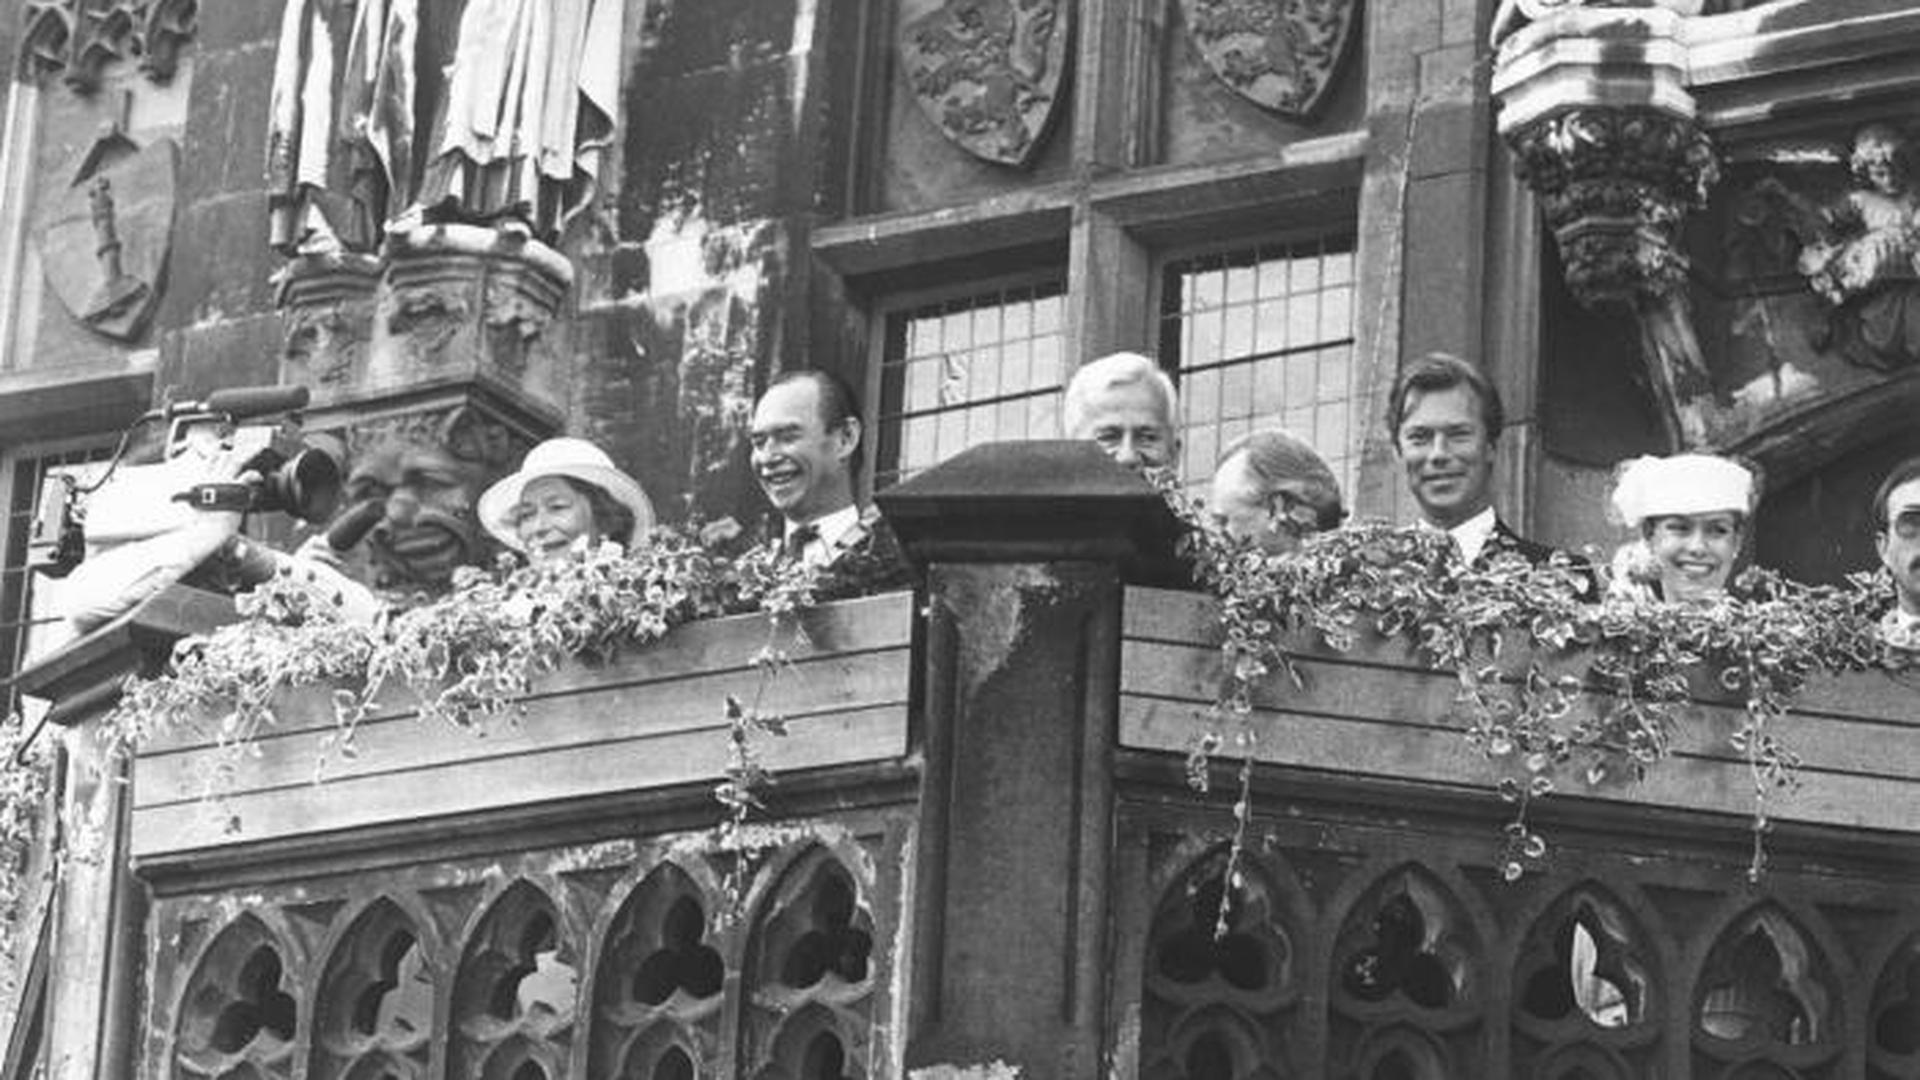 Le grand-duc Jean à Aix-les-Chapelles. On voit également à gauche la grande-duchesse Joséphine-Charlotte, à droite le président allemand Richard von Weizsäcker ainsi que le grand-duc héritierHenri et la grande-duchesse héritière Maria Teresa.